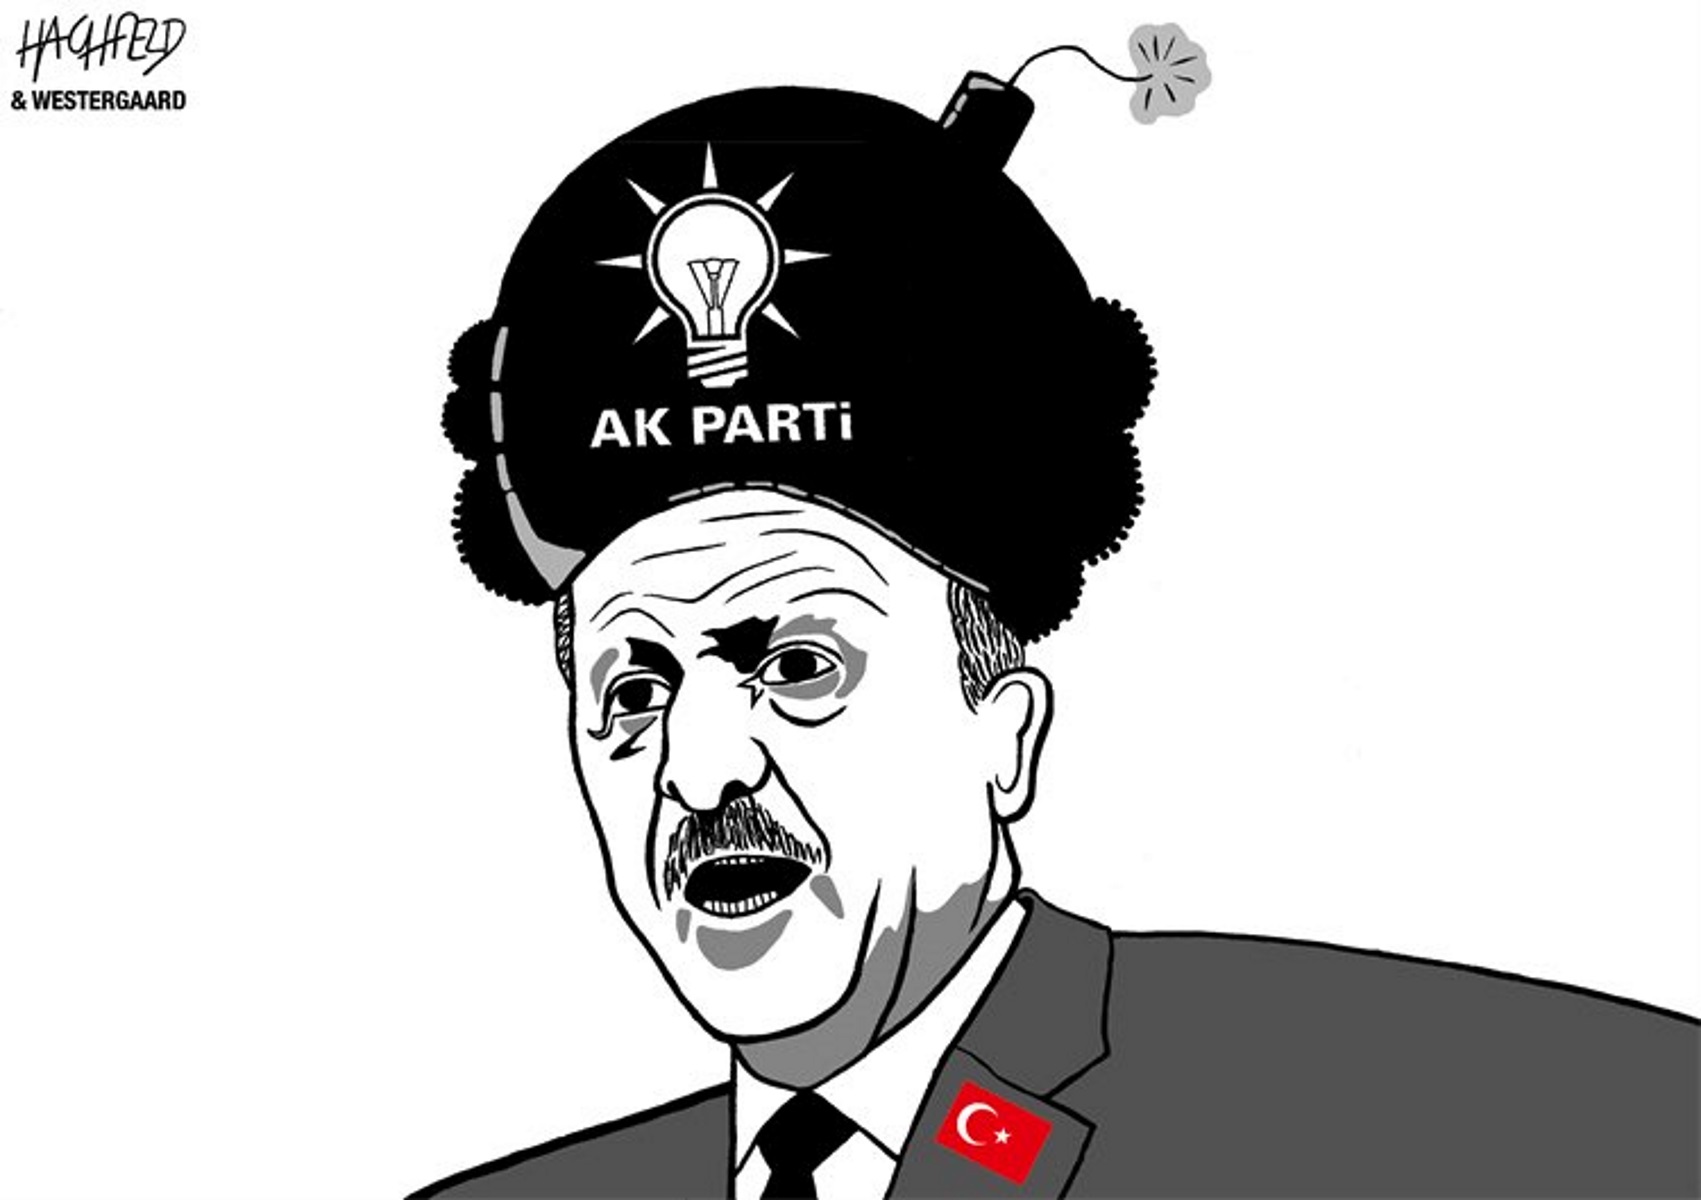 Έξαλλος ο Ερντογάν με σκίτσο που τον δείχνει τρομοκράτη – “Εμείς δεν έχουμε ναζισμό στην ιστορία μας”